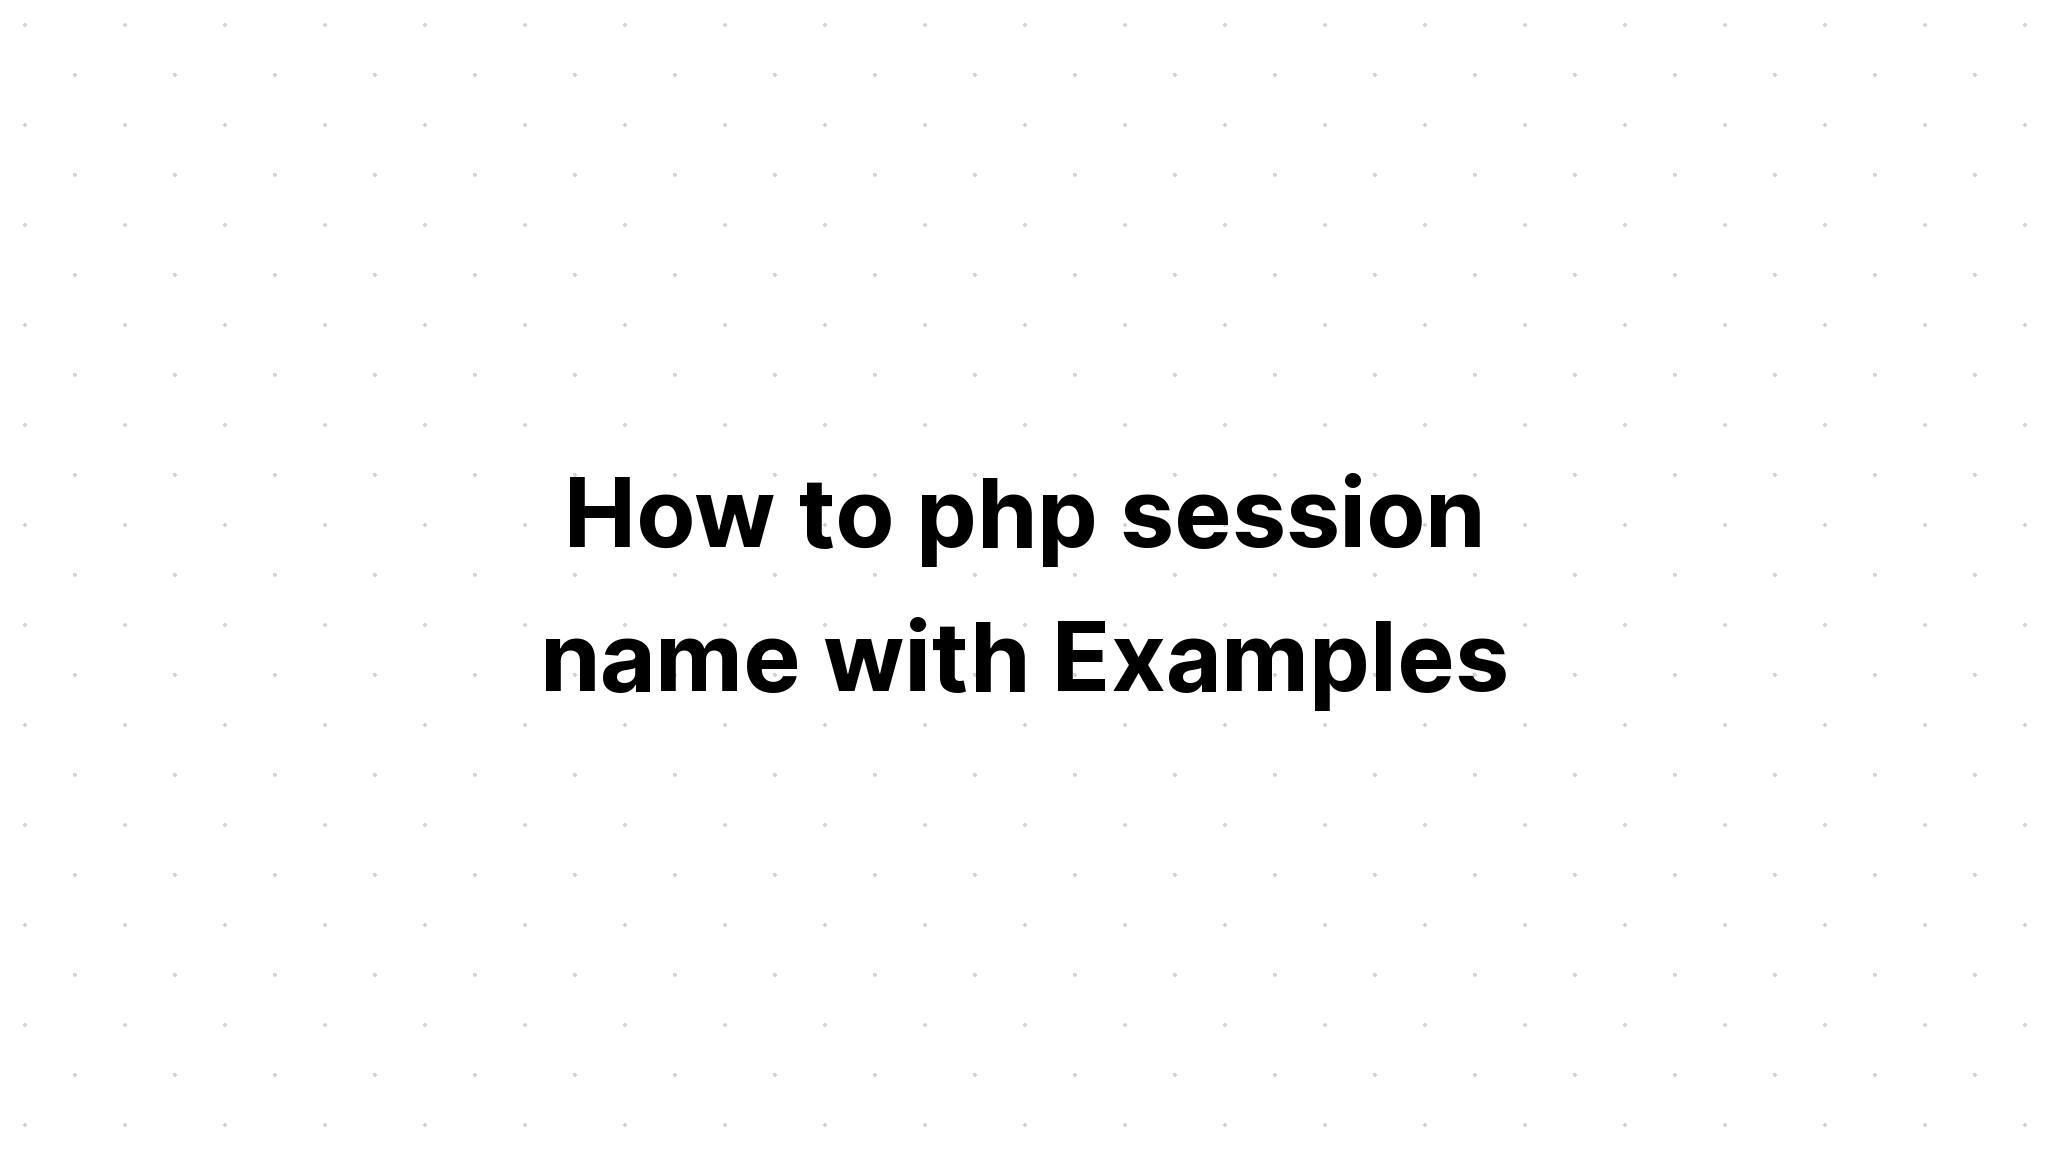 Cách đặt tên phiên php với các ví dụ